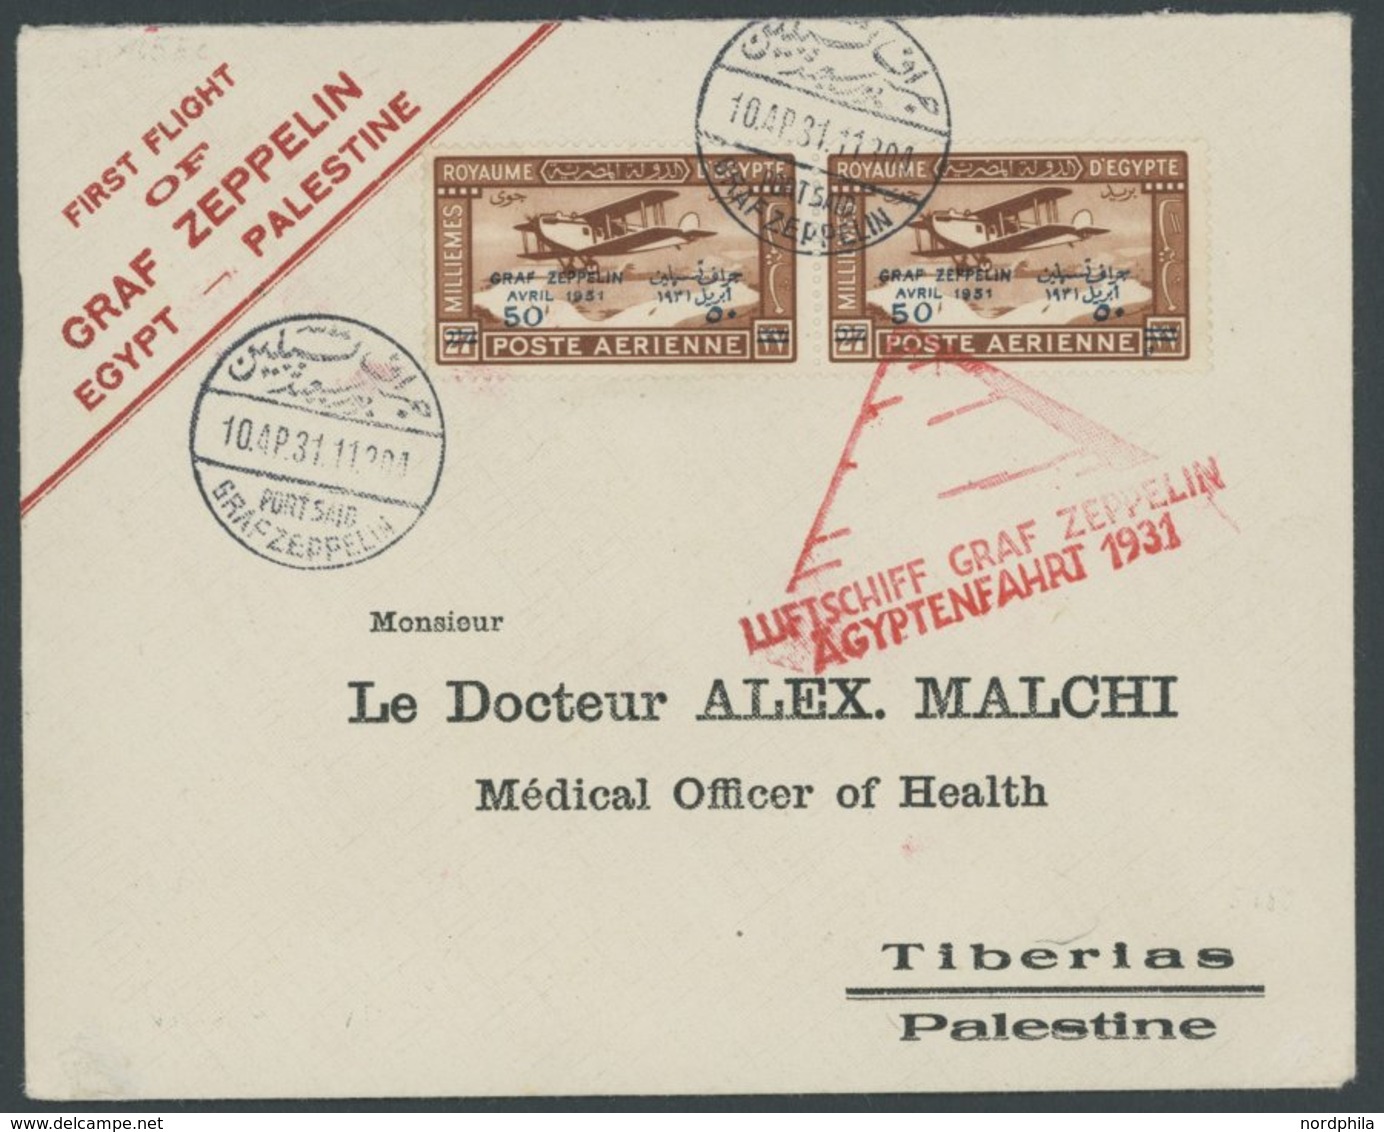 ZEPPELINPOST 105Ec BRIEF, 1931, Ägyptenfahrt, ägyptische Post, Palästina-Rundfahrt, Sonderstempel Port Said, Prachtbrief - Airmail & Zeppelin